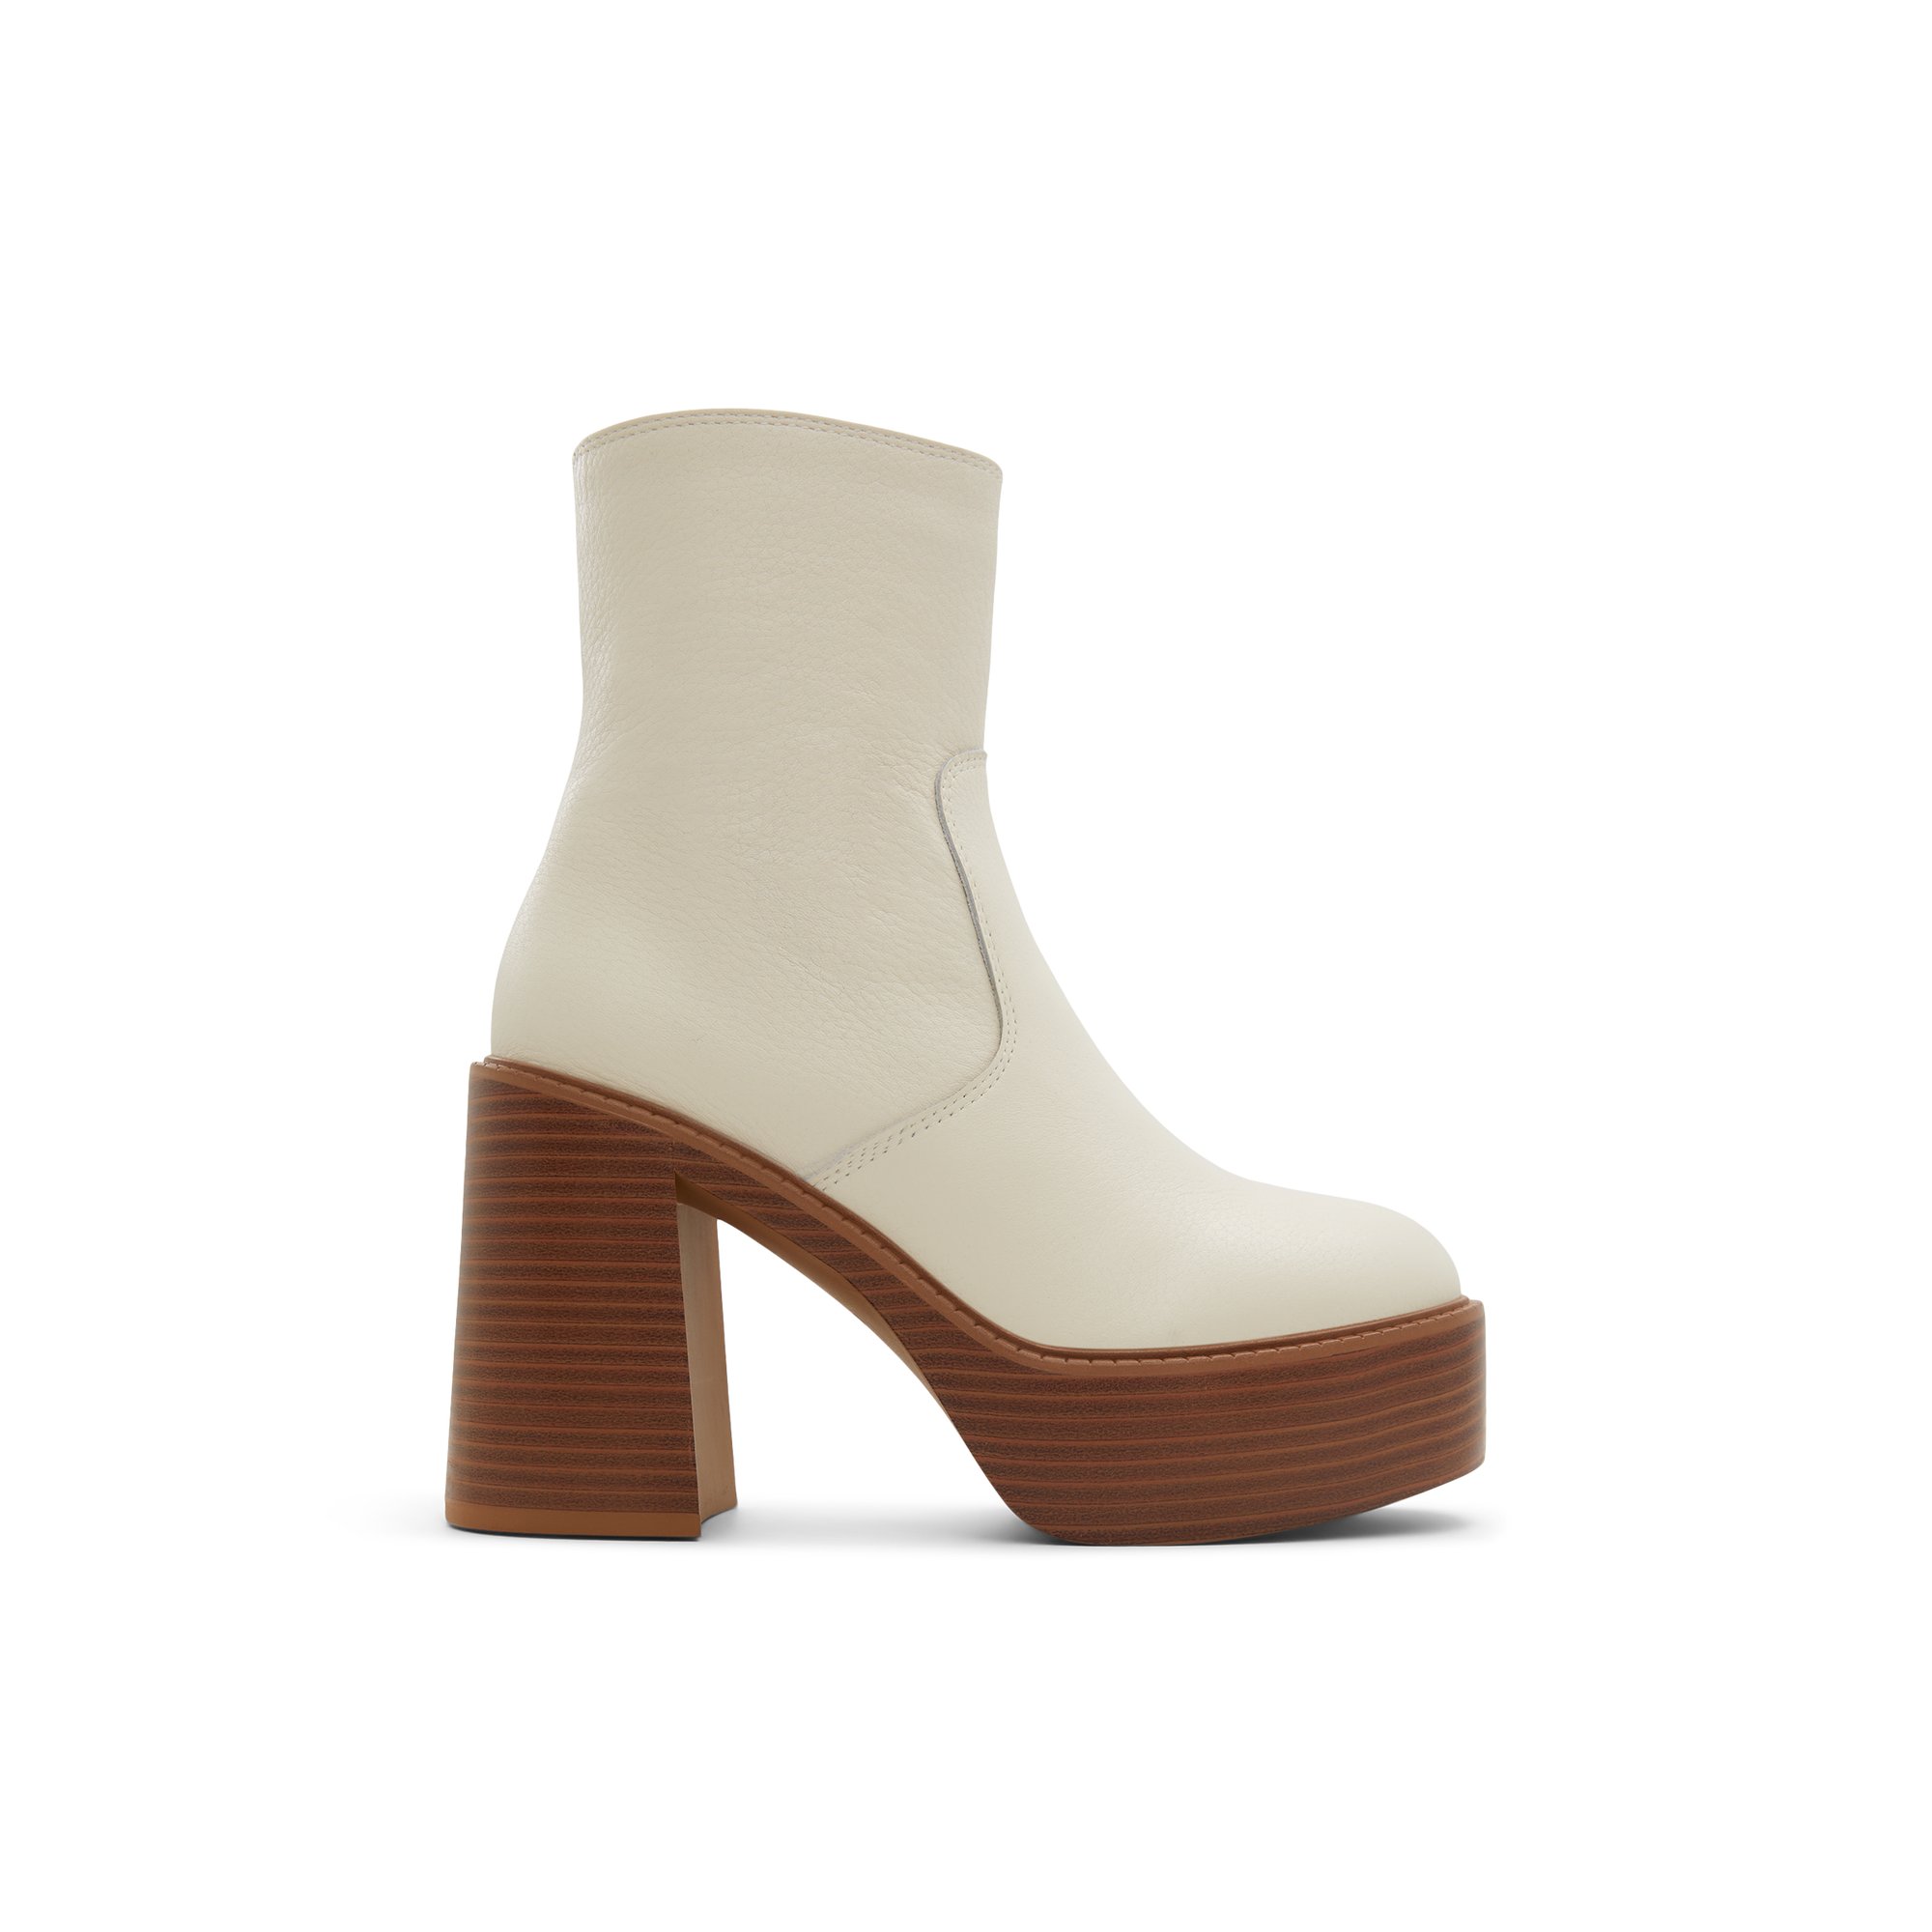 ALDO Myrelle - Women's Ankle Boot - White